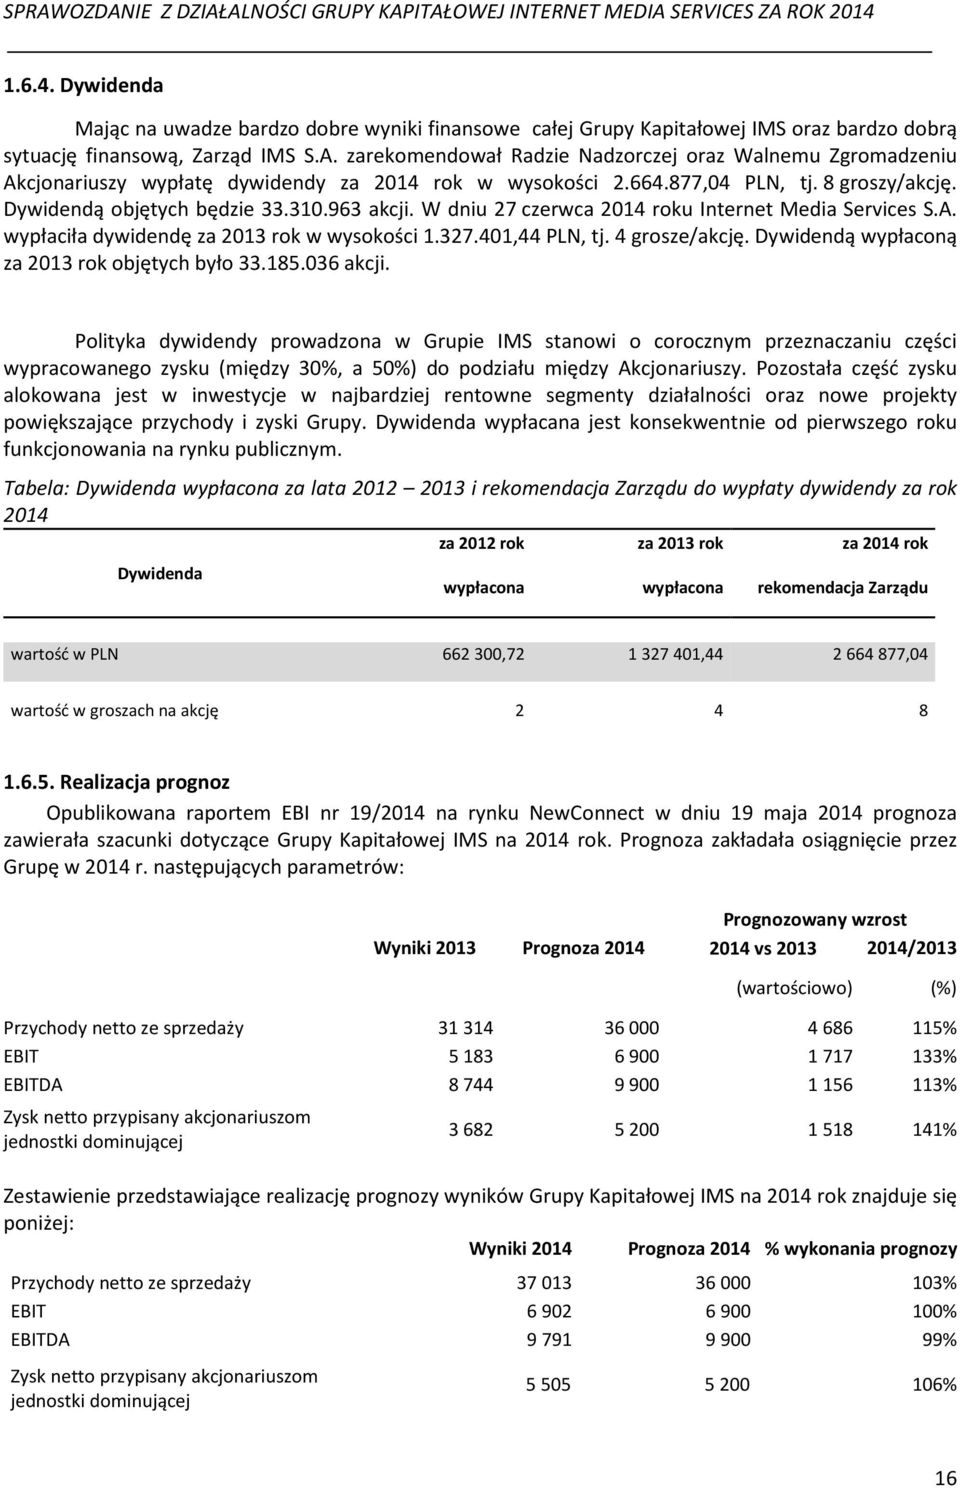 W dniu 27 czerwca 2014 roku Internet Media Services S.A. wypłaciła dywidendę za 2013 rok w wysokości 1.327.401,44 PLN, tj. 4 grosze/akcję. Dywidendą wypłaconą za 2013 rok objętych było 33.185.